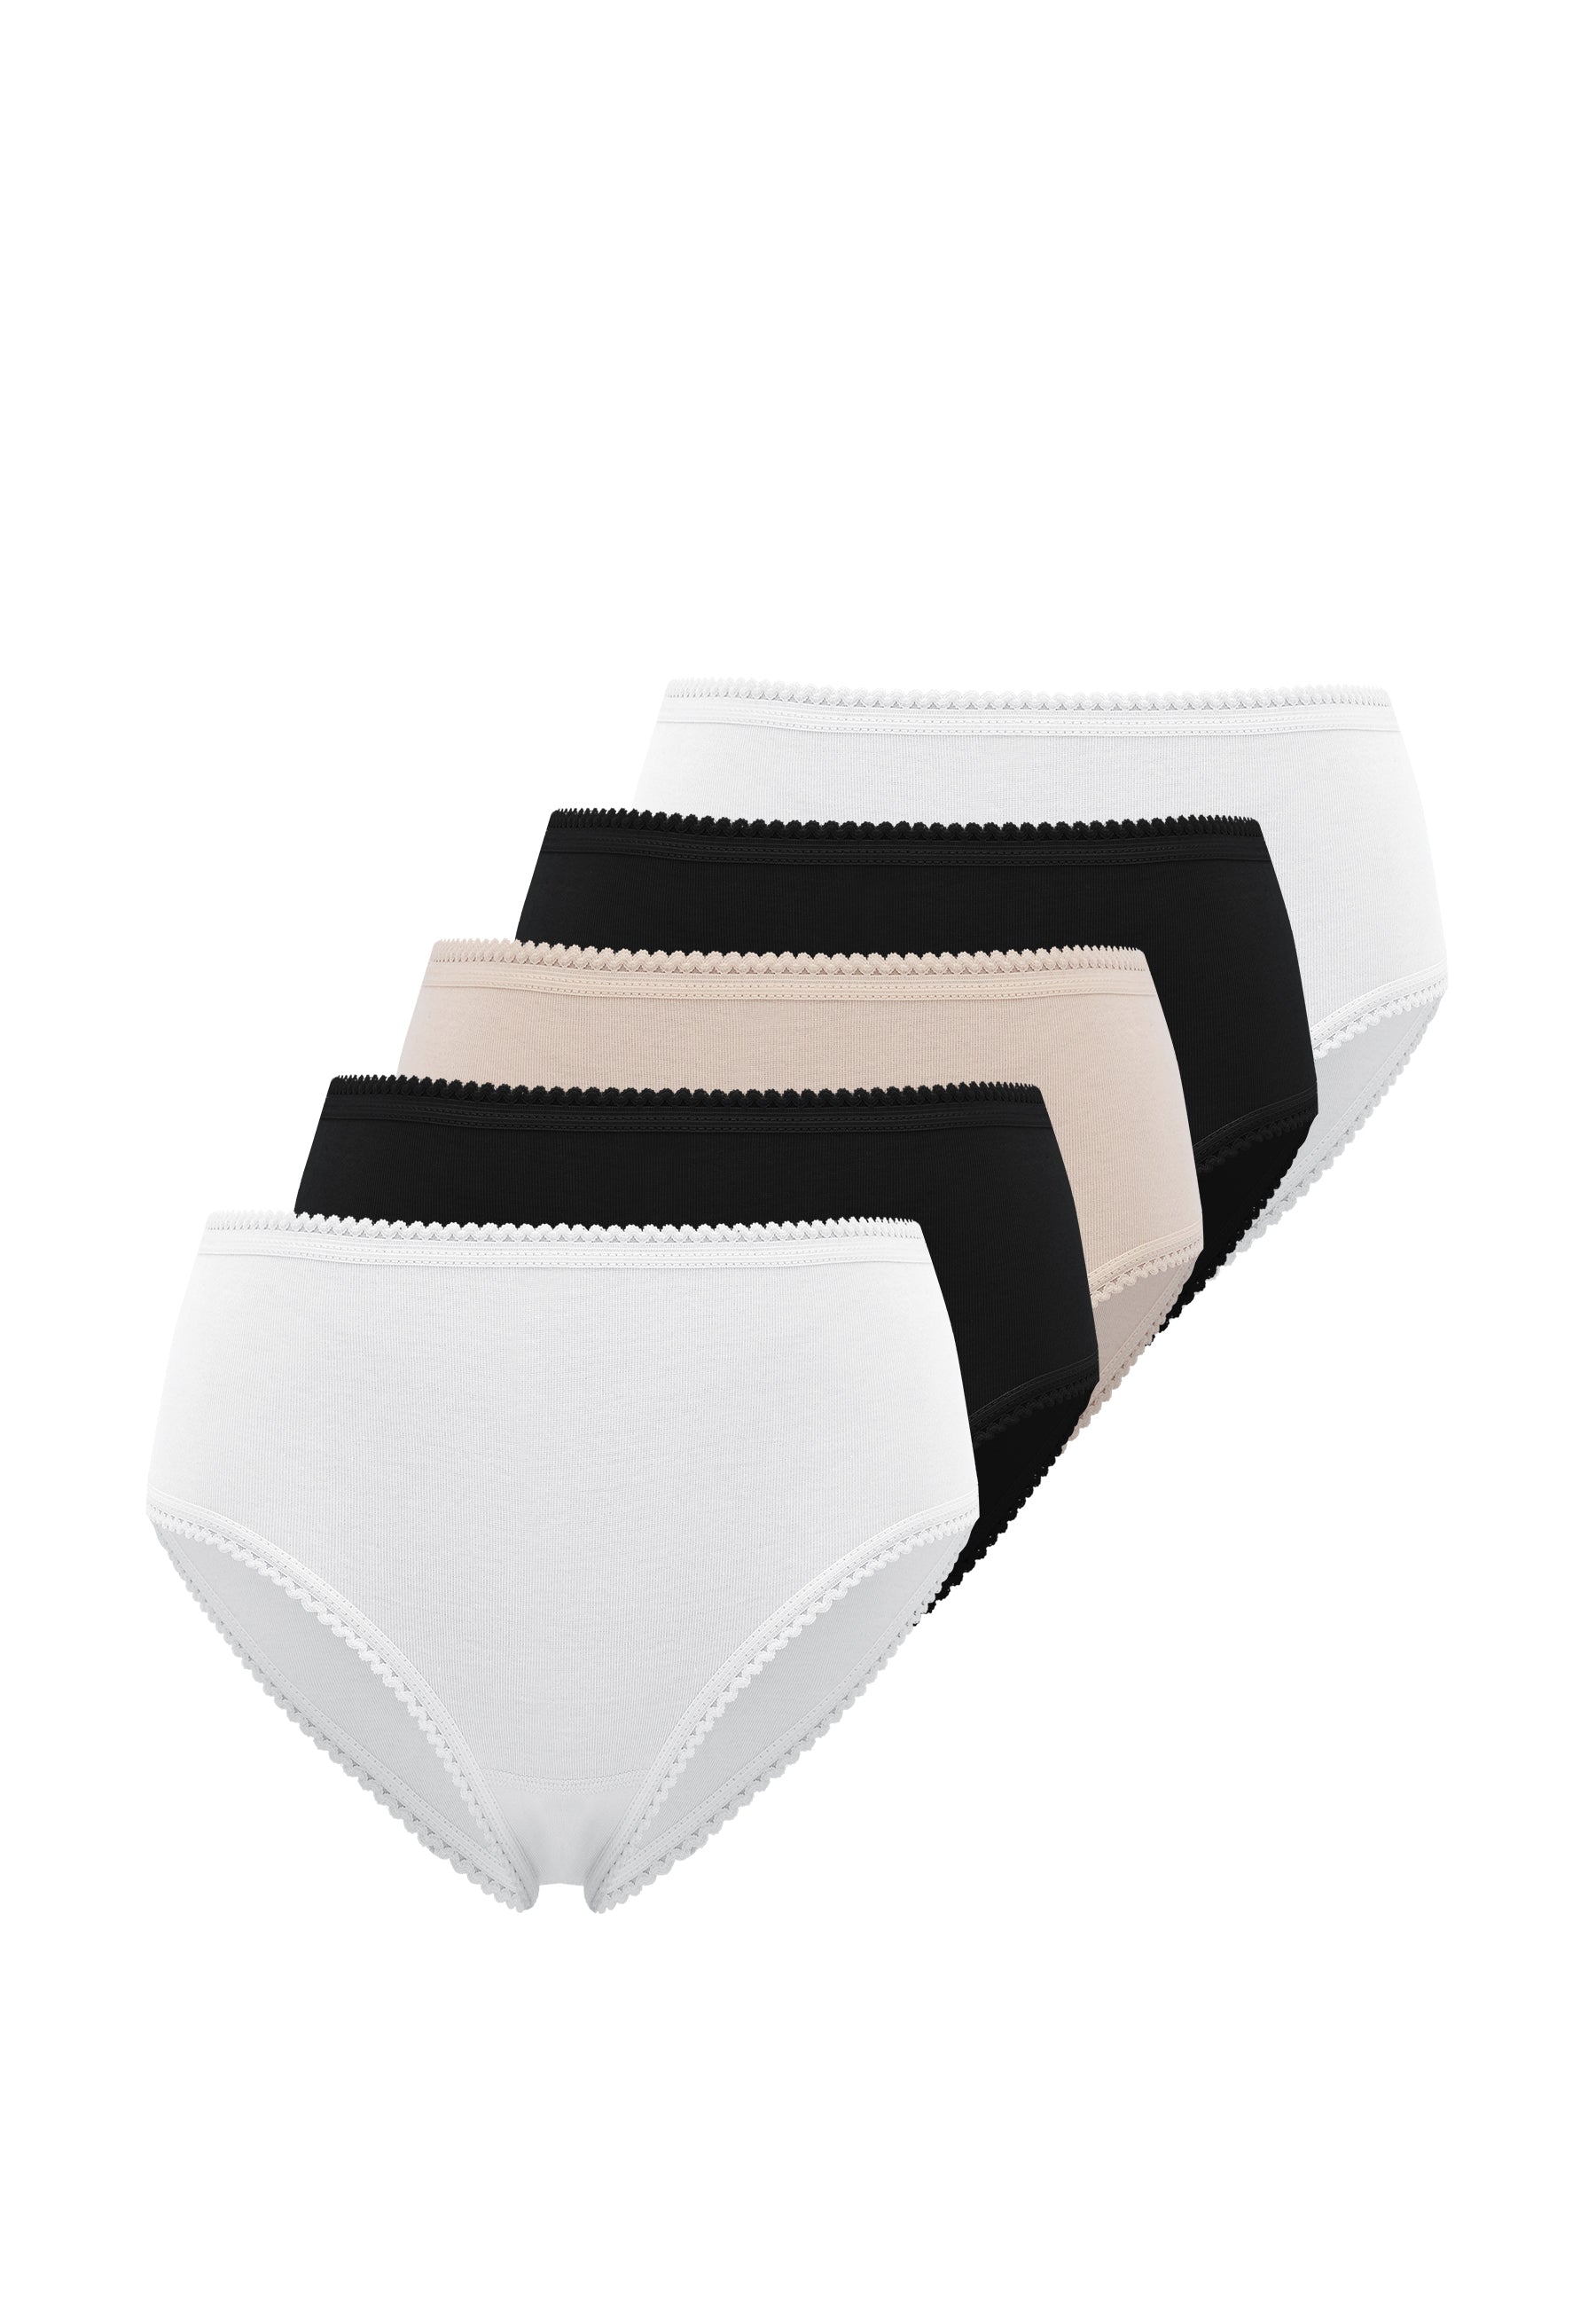 5’li Siyah, Beyaz, Ten Rengi Pamuklu Maxi Boy Yüksek Bel Kadın Slip EVA RIB MAXI - Underwear - Westmark London EU(TR) Store Organik Pamuklu Sürdürülebilir Moda